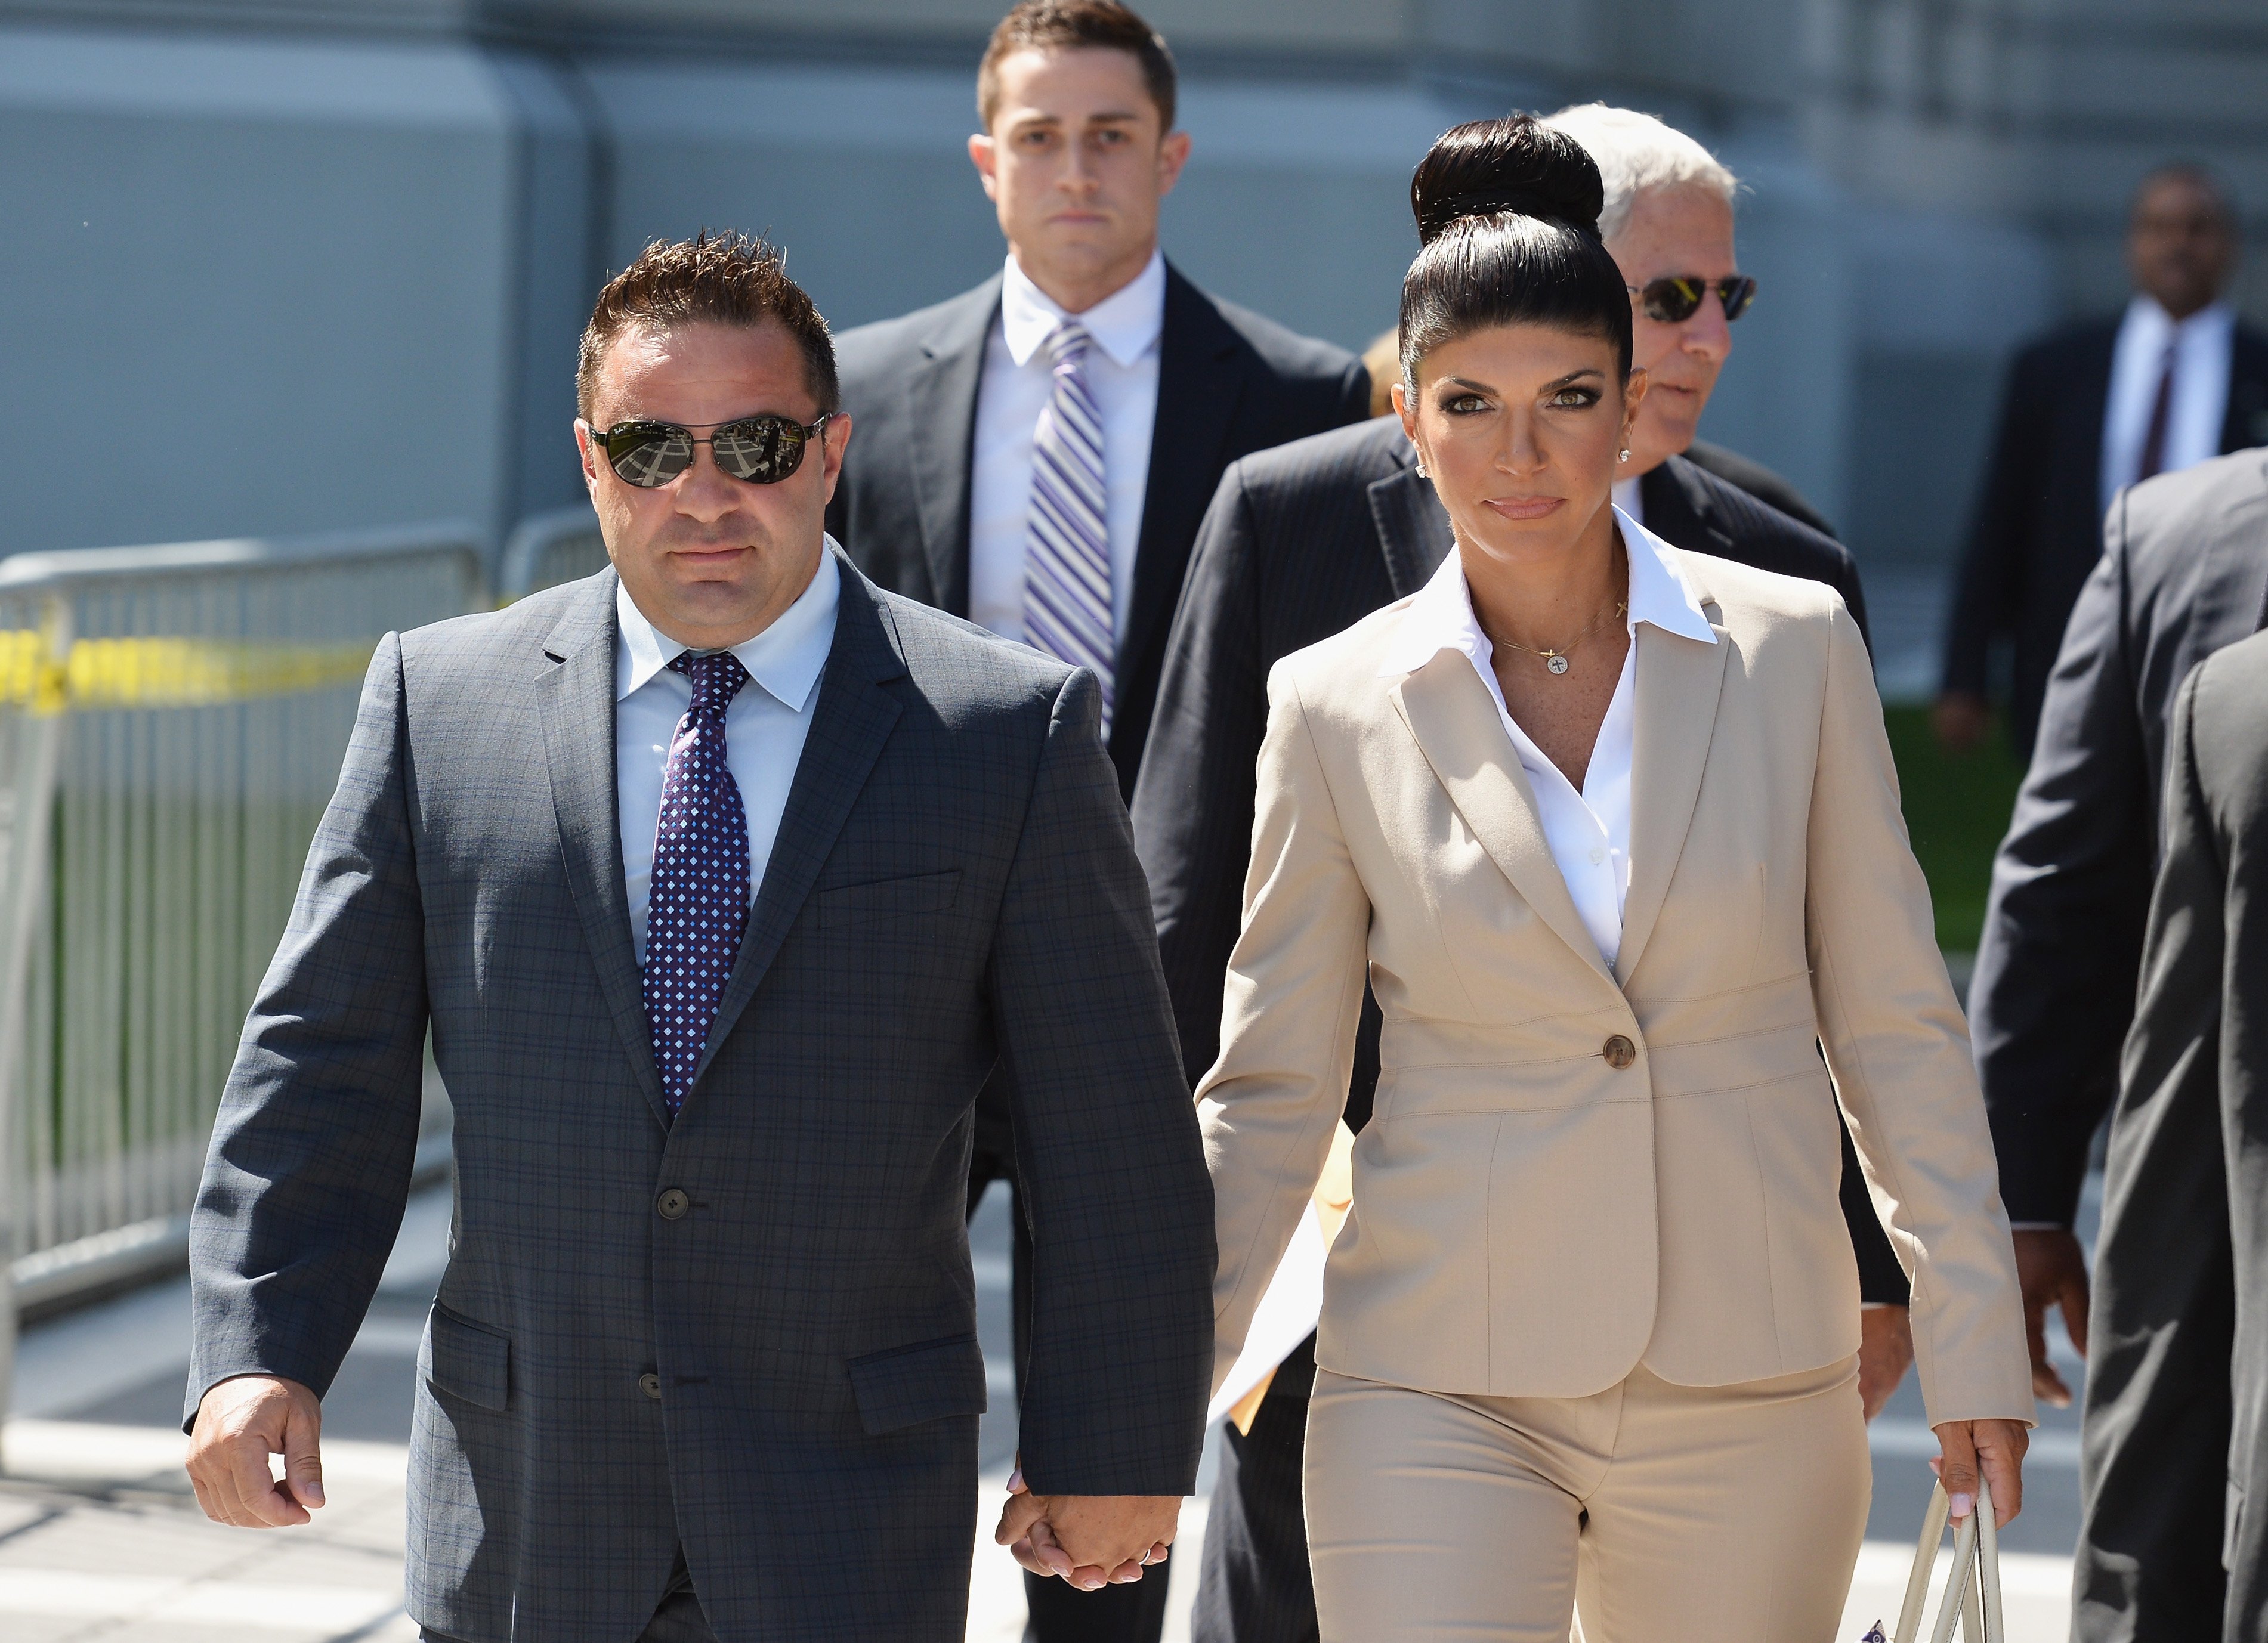 Joe Giudice et son épouse Teresa Giudice quittent le tribunal | Source: Getty Images